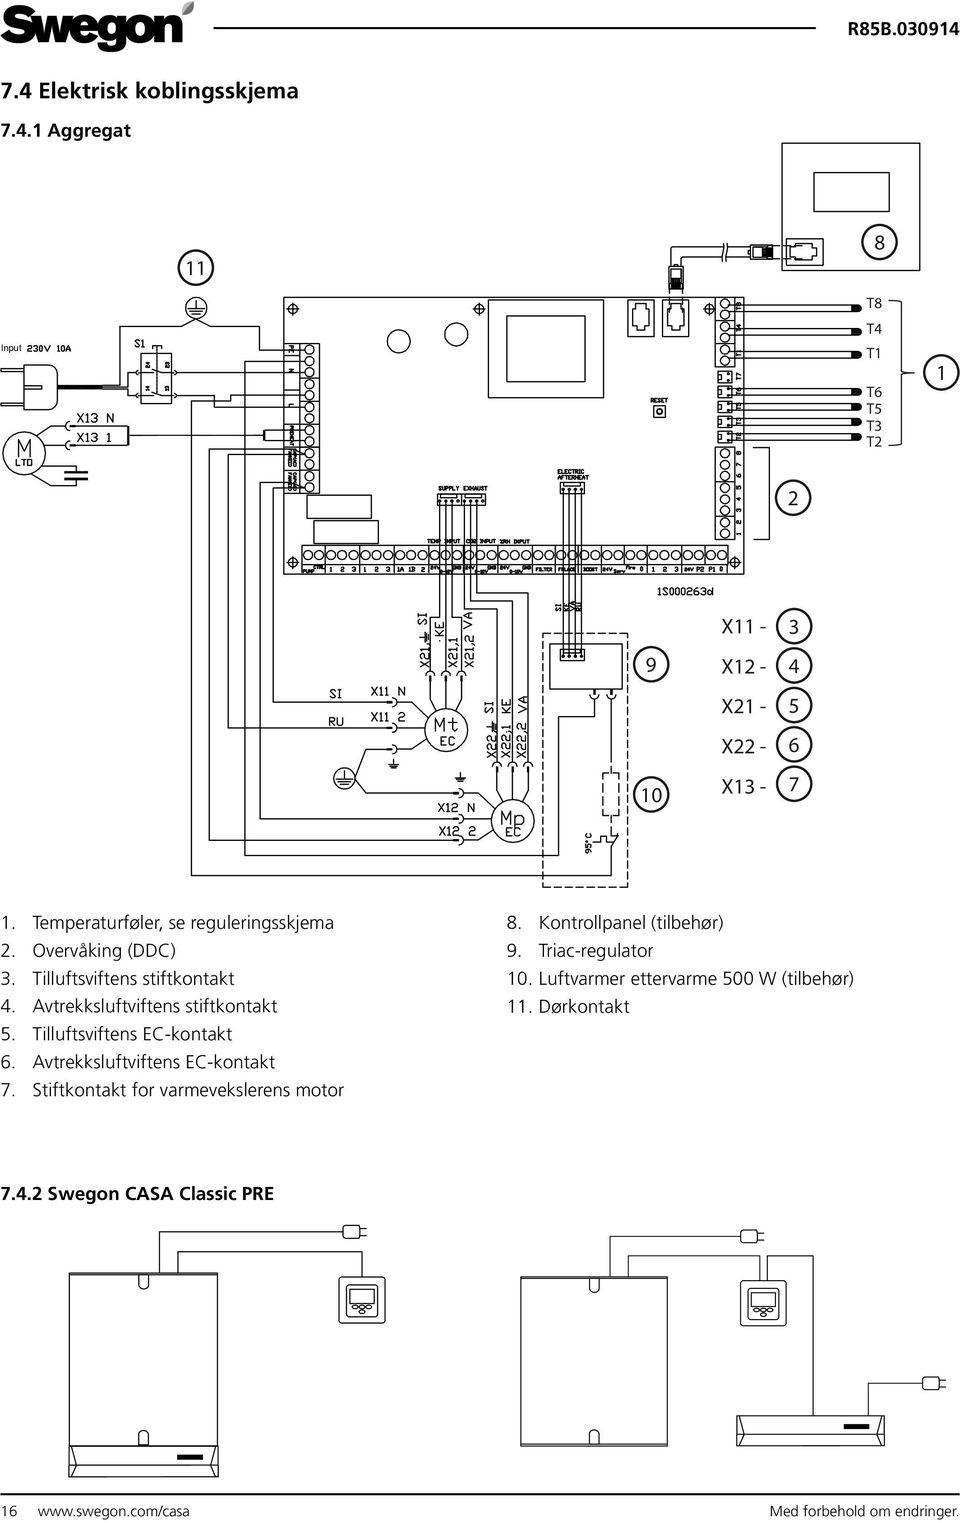 Tilluftsviftens EC-kontakt 6. Avtrekksluftviftens EC-kontakt 7. Stiftkontakt for varmevekslerens motor 8. Kontrollpanel (tilbehør) 9.